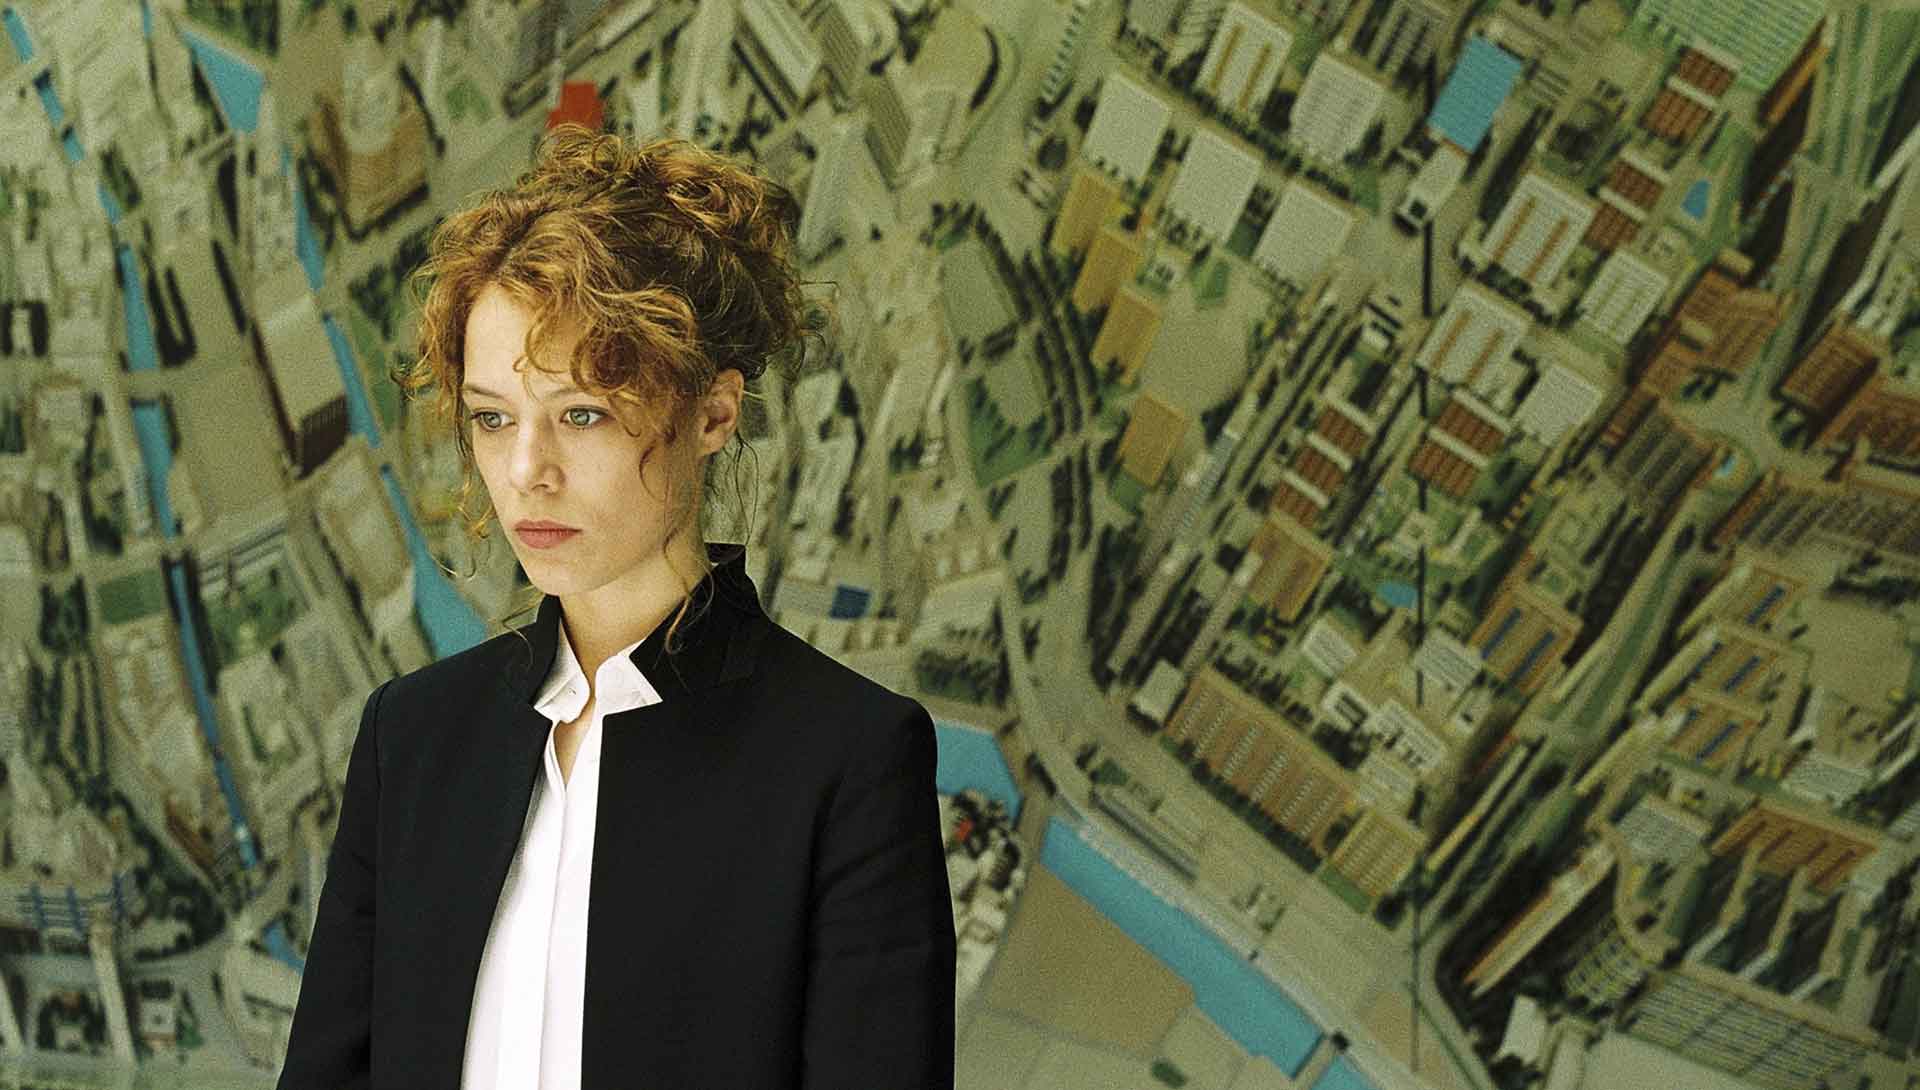 Jeune femme devant un mur représentant la carte d'une ville. Extrait du film Ondine de Christian Petzold.